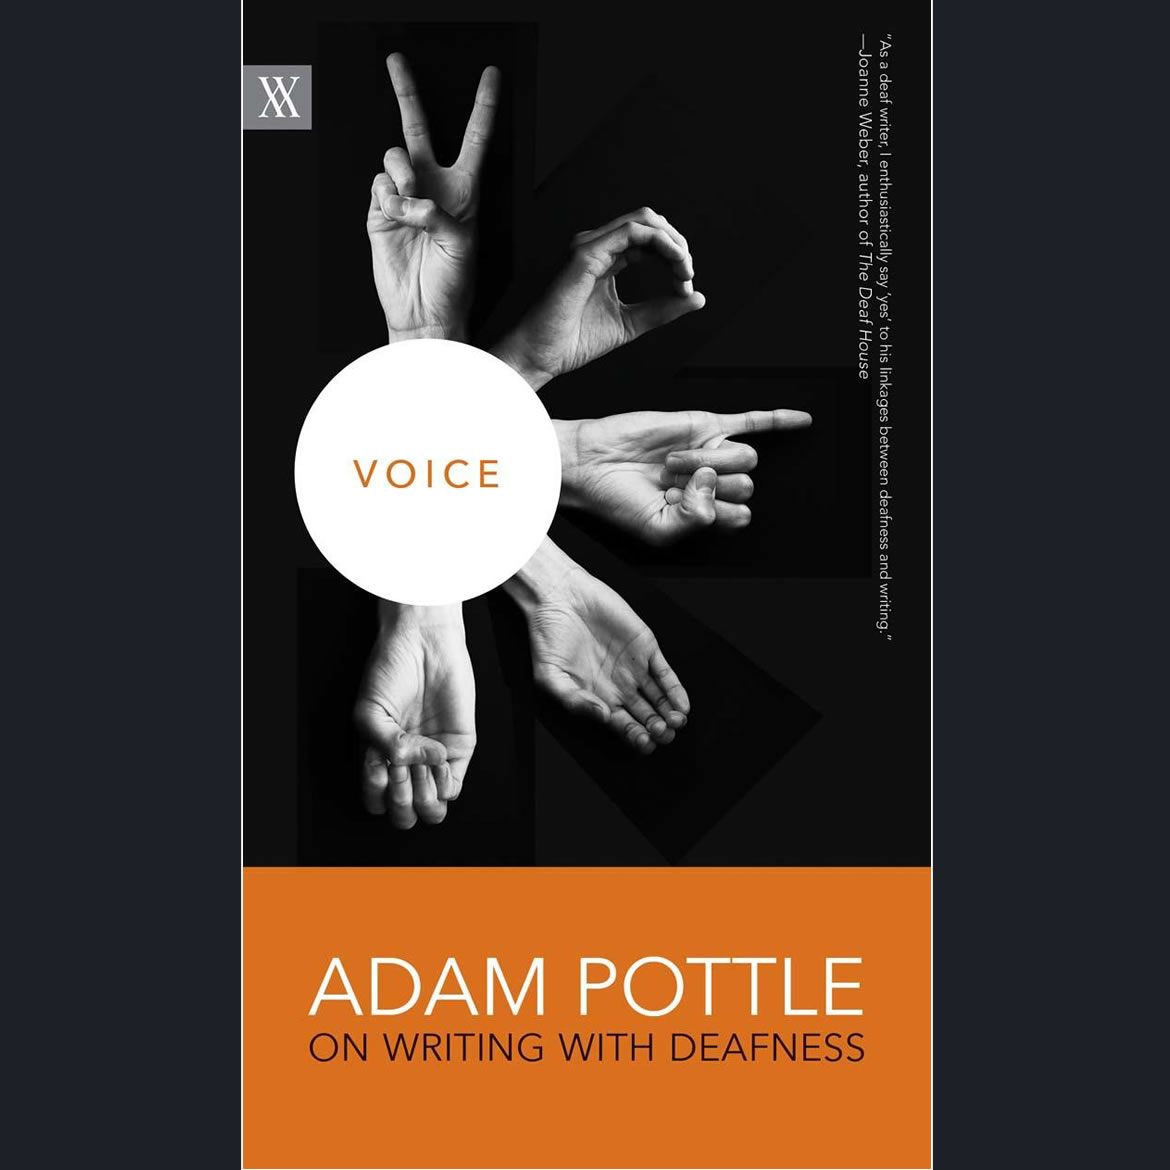 Voice by Adam Pottle